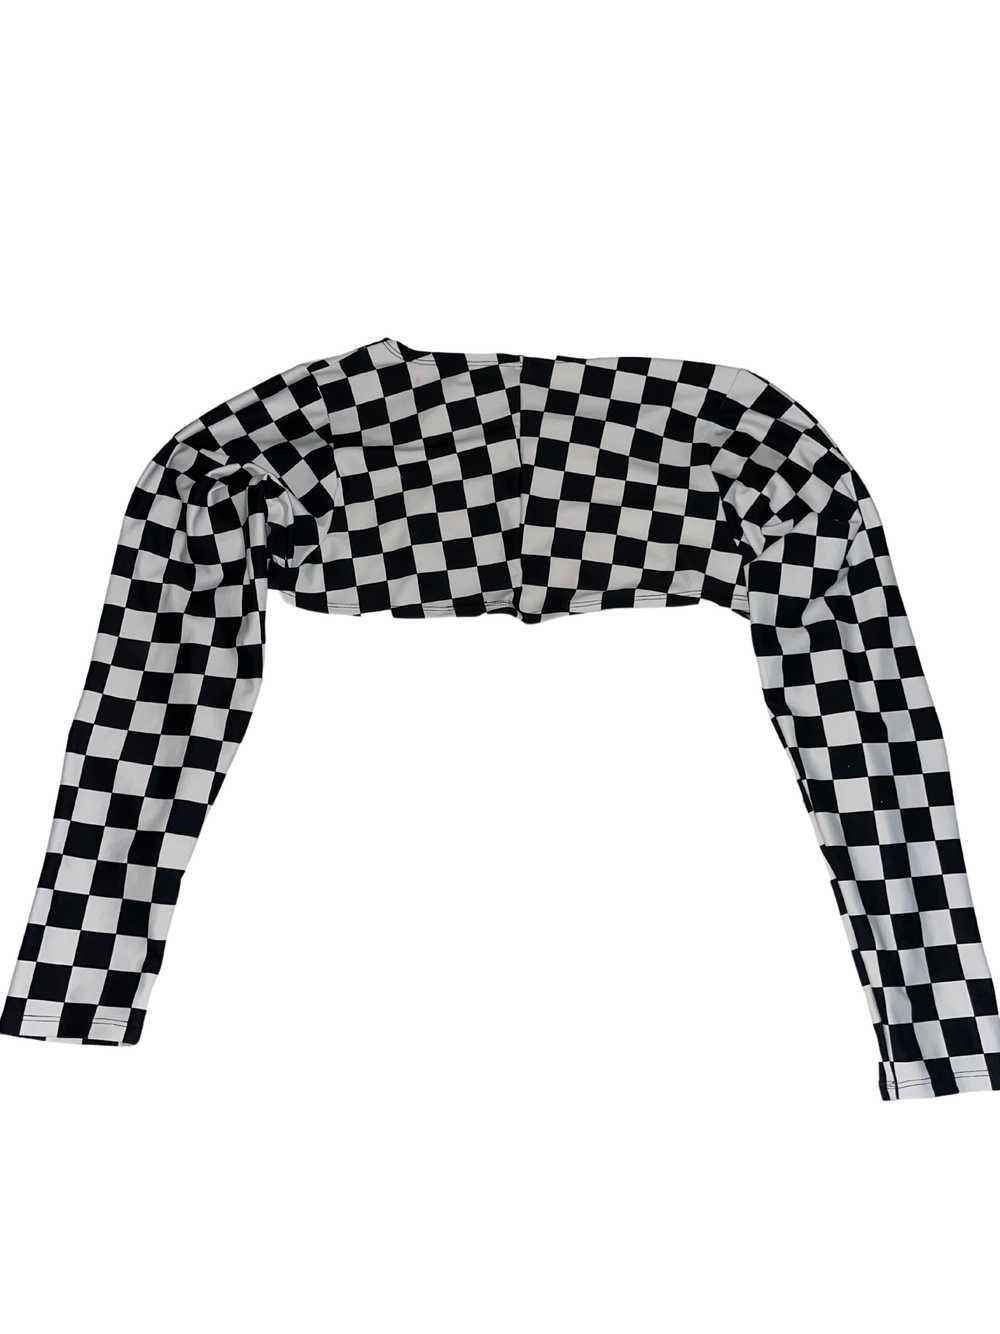 Freedom Rave Wear Checkered Shrug - image 2